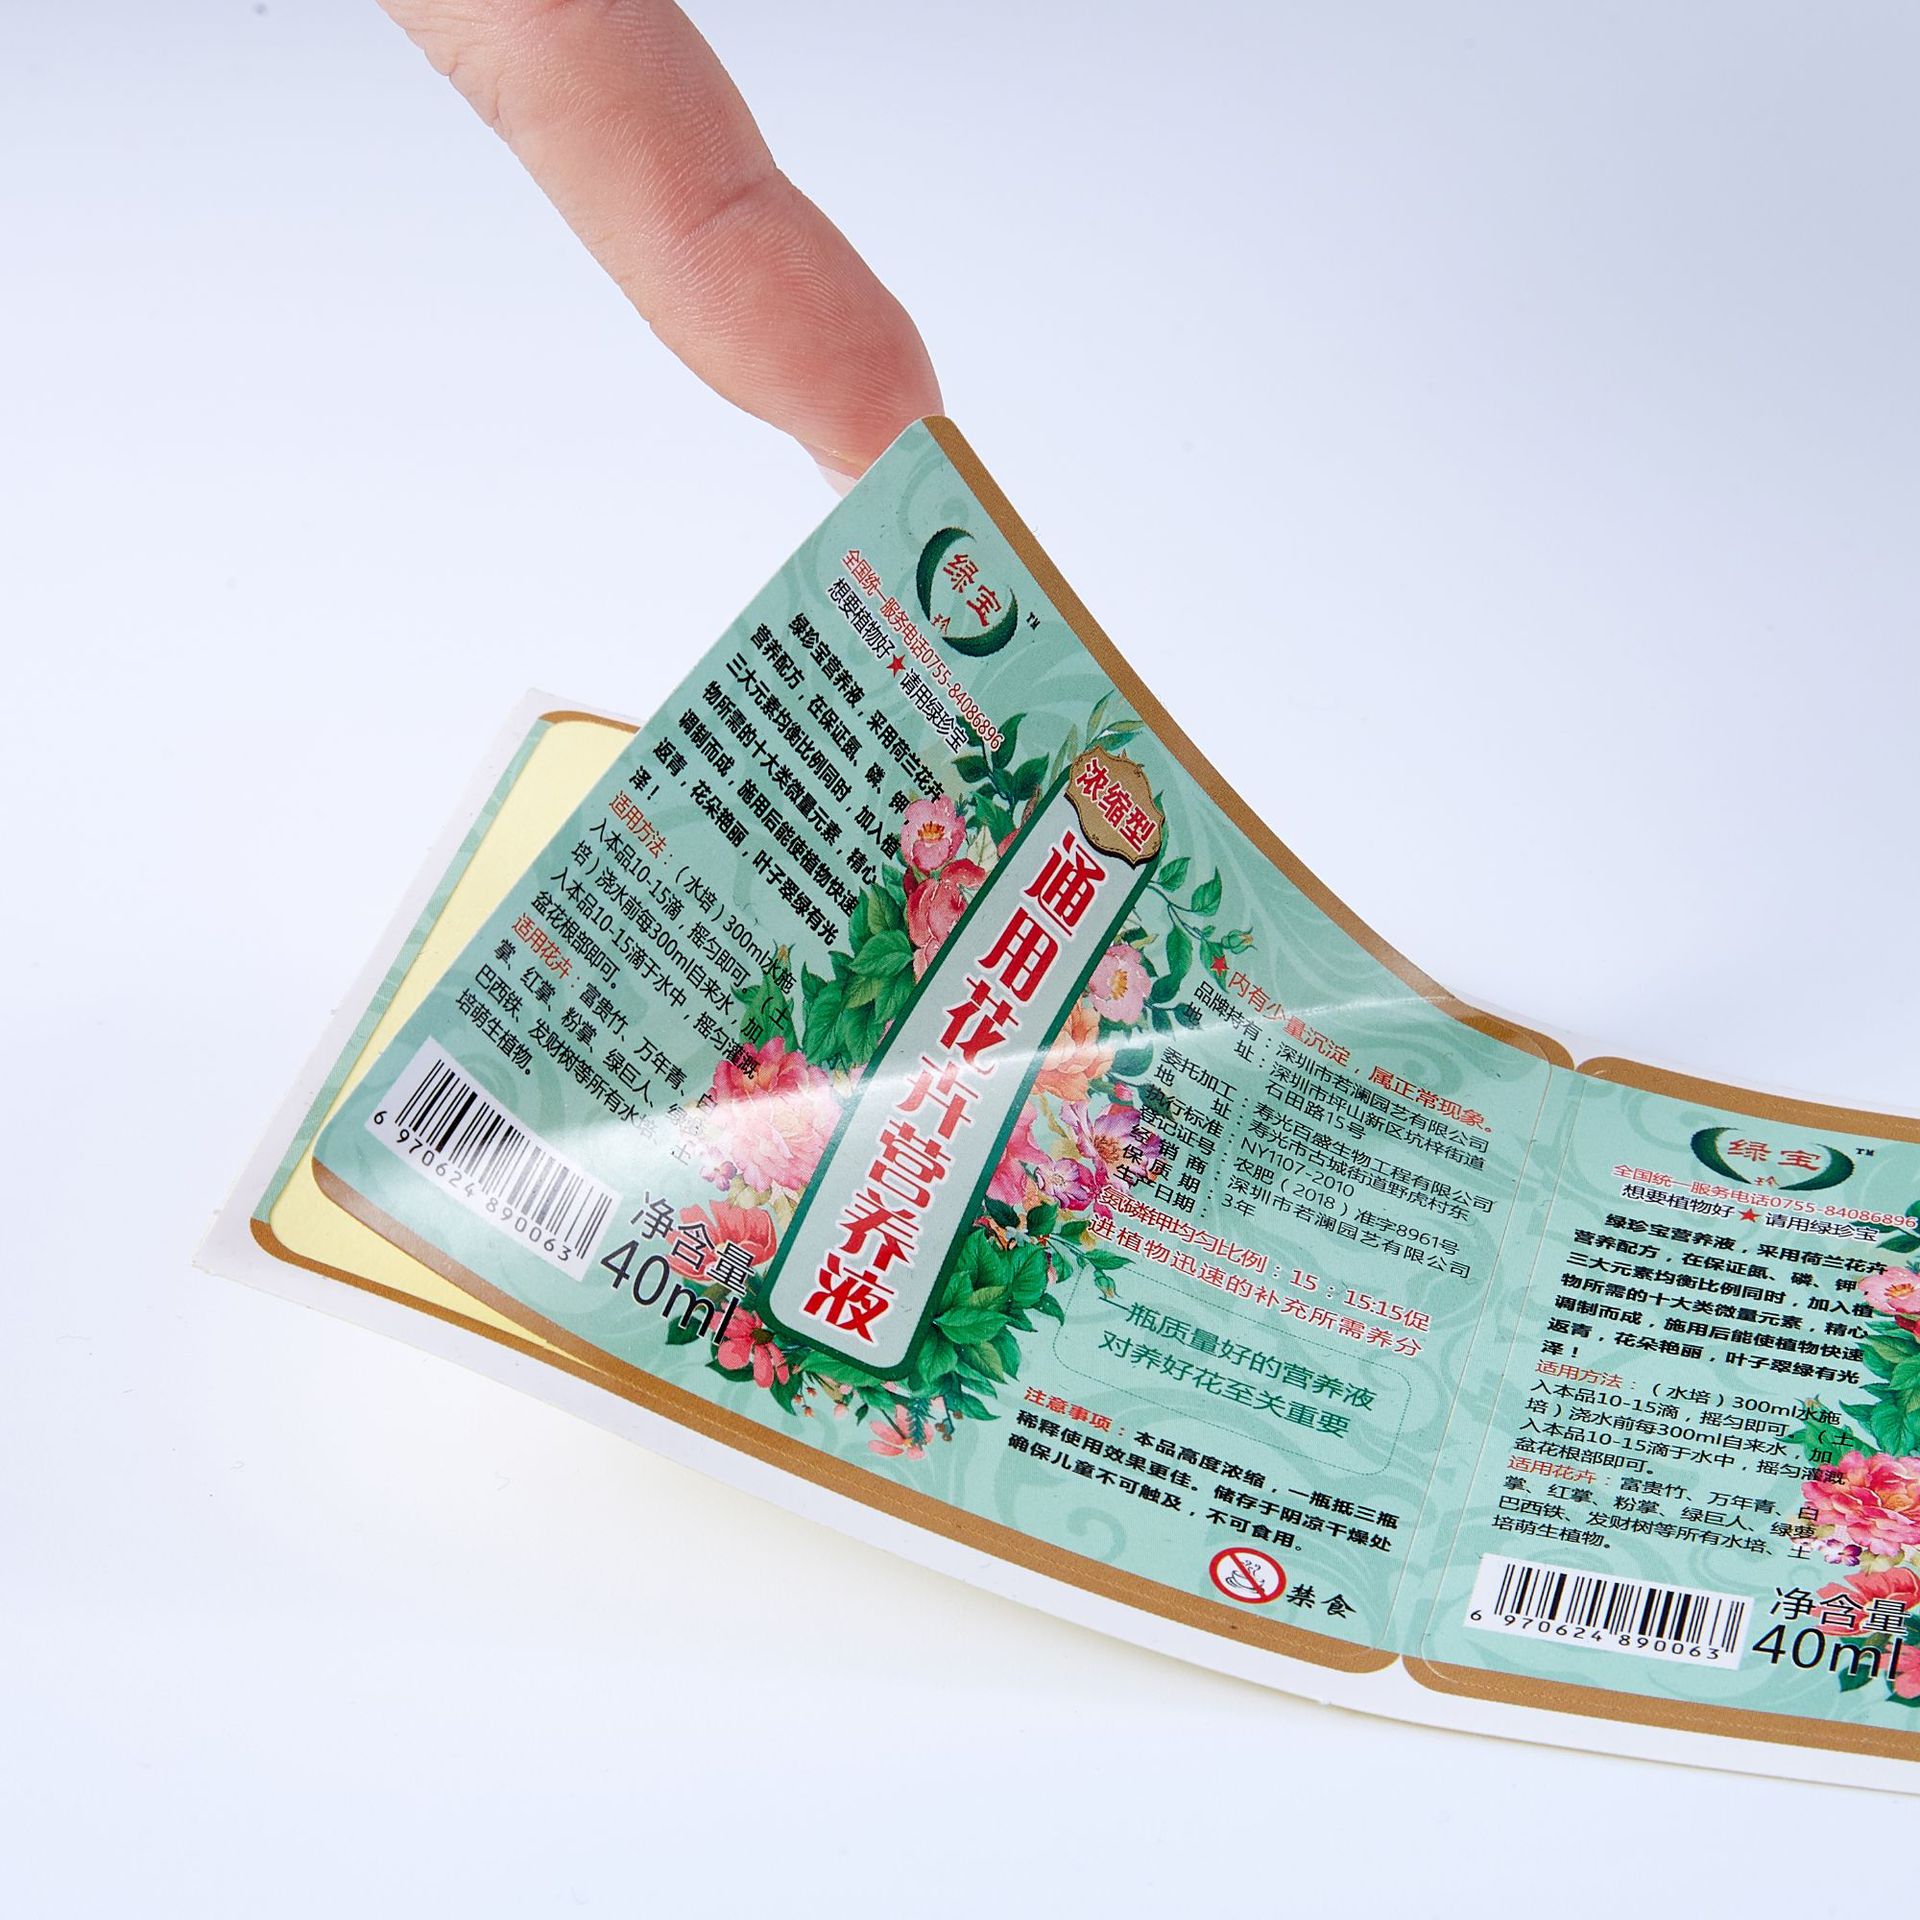 Autocolant PVC imprimat personalizat Laminare lucioasă Etichetă autocolant impermeabilă Imagine prezentată